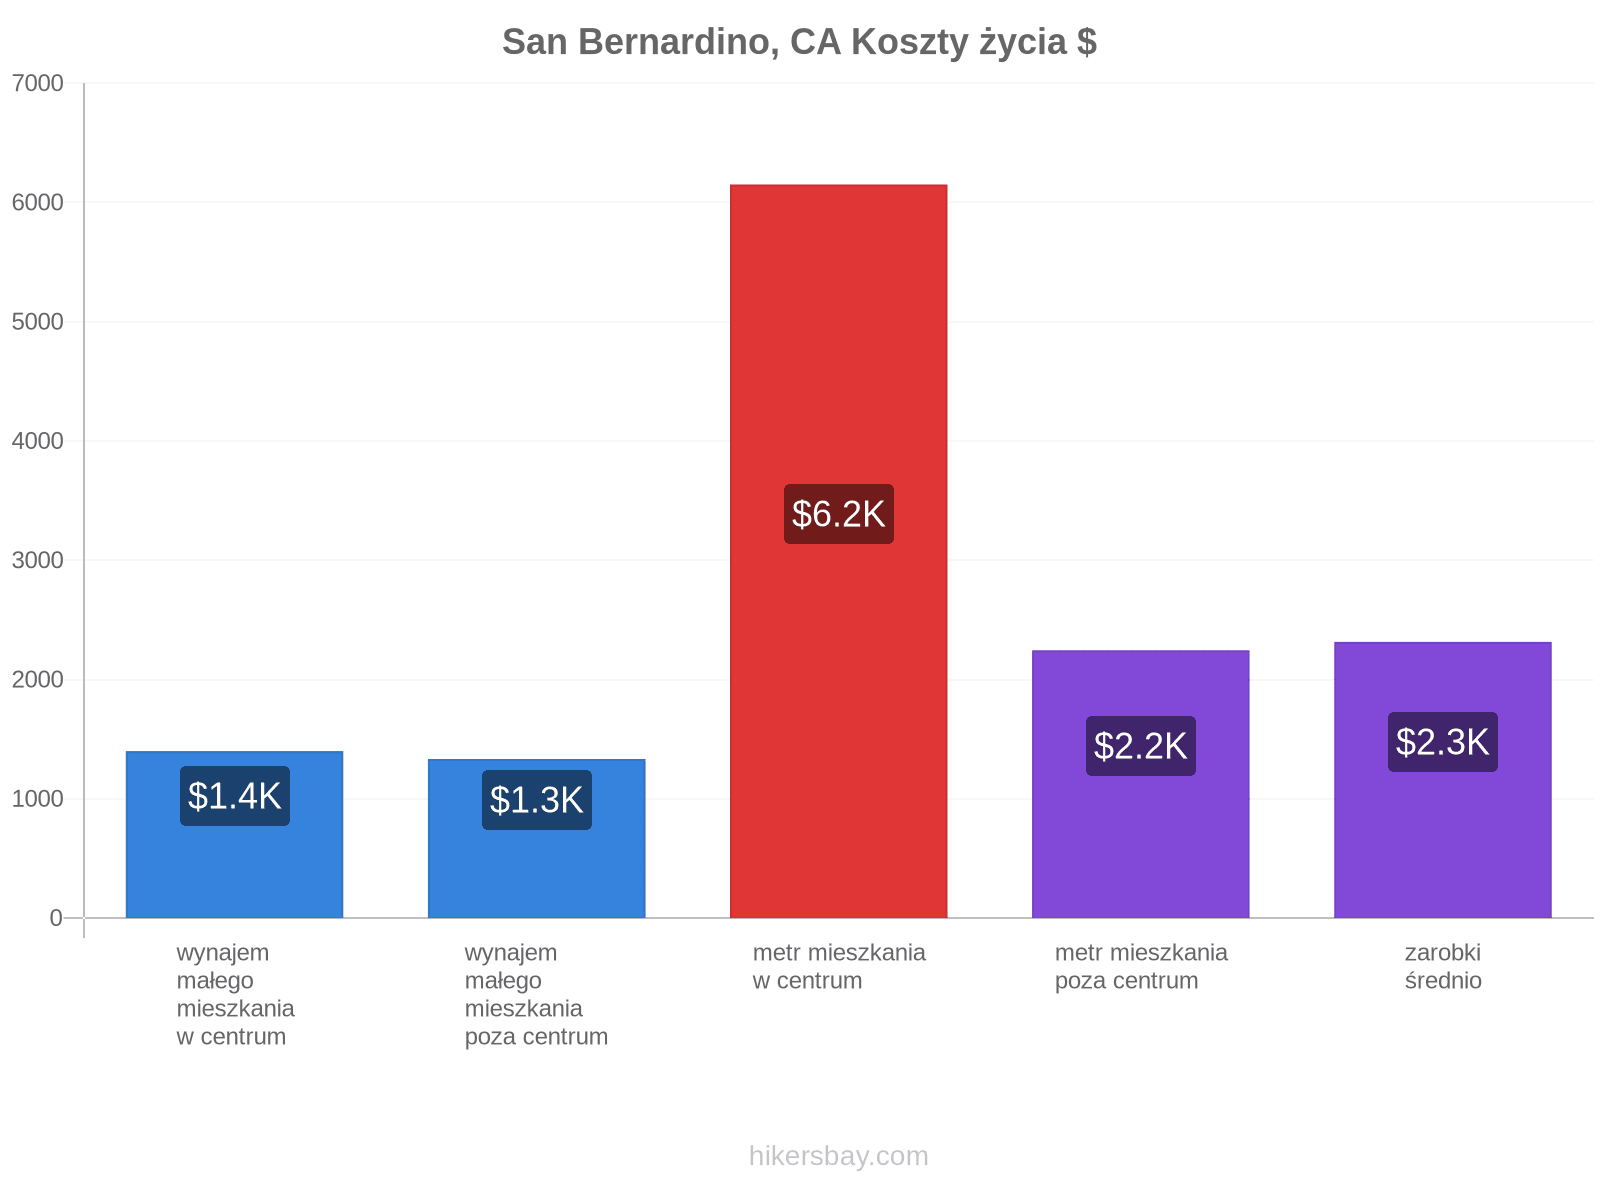 San Bernardino, CA koszty życia hikersbay.com